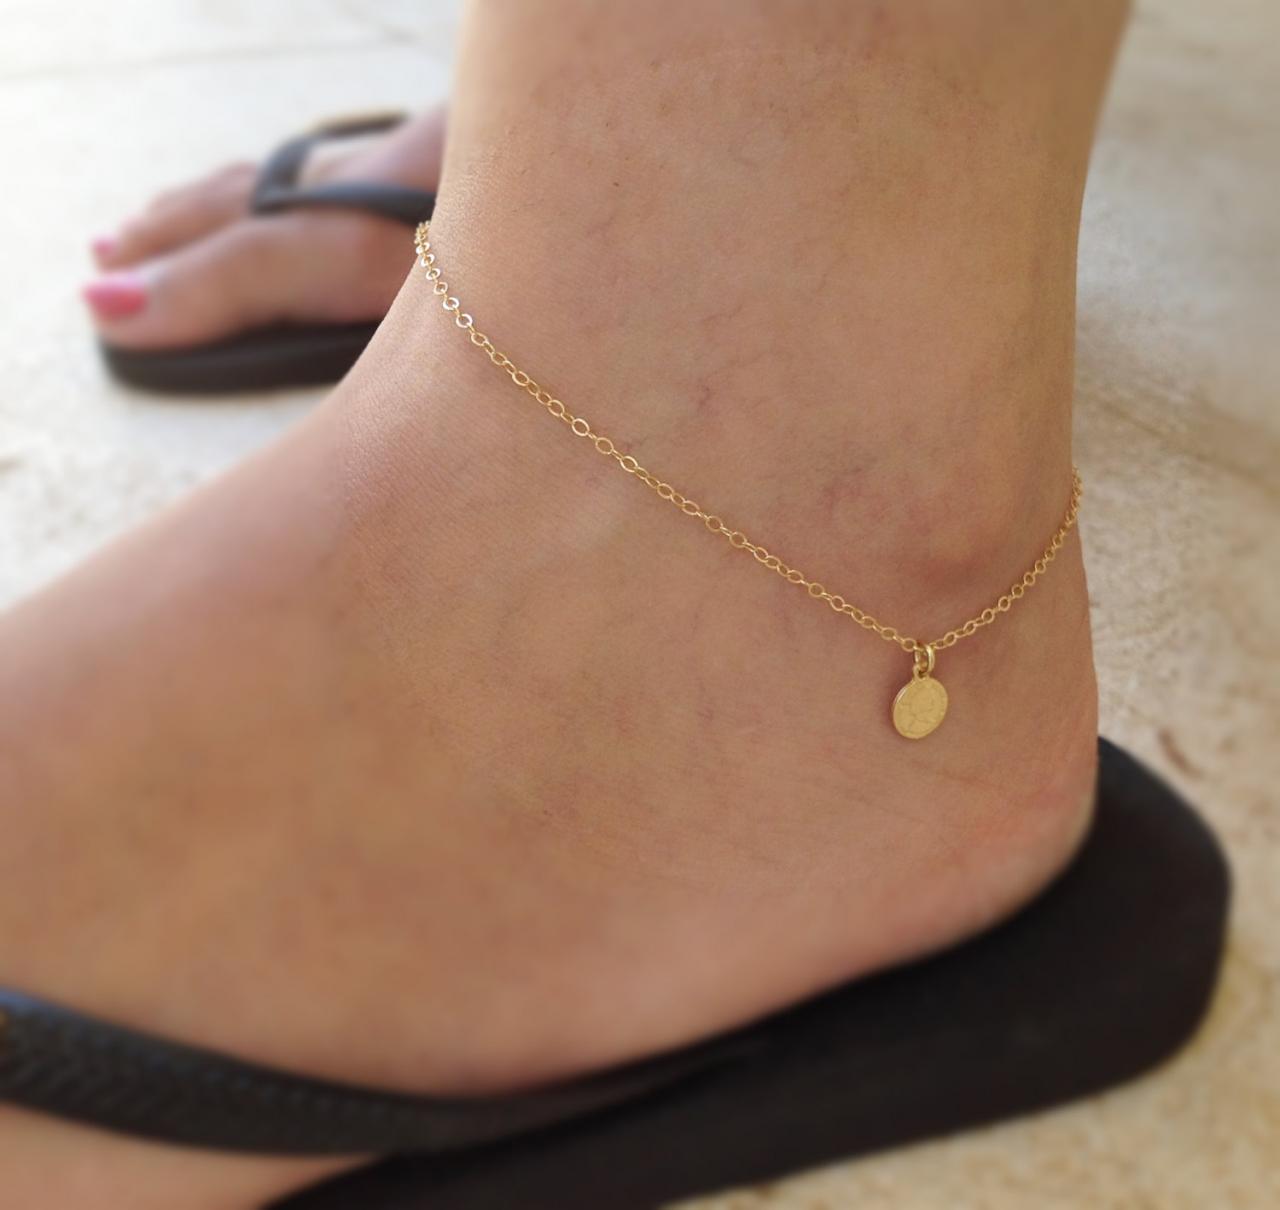 Gold anklet, gold coin anklet, summer anklet, simple anklet, basic anklet, everyday jewelry, anklet bracelet -10033